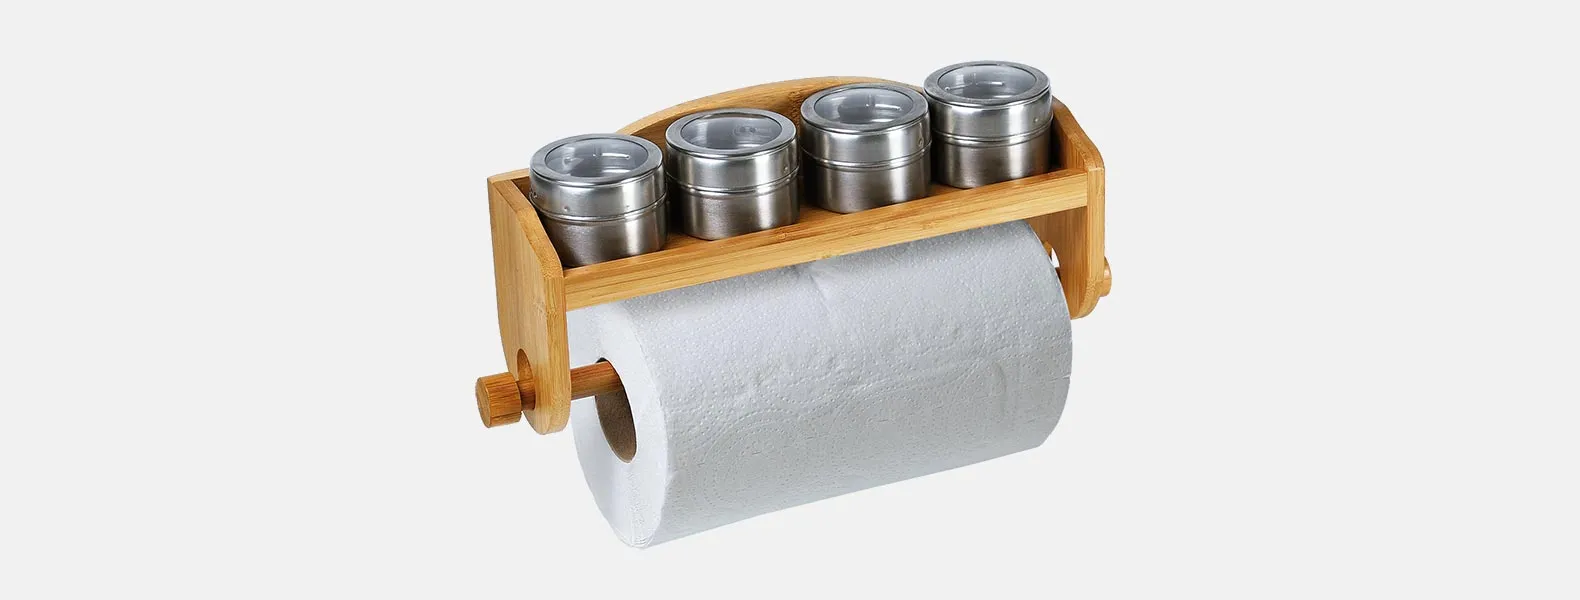 Porta Condimentos em Bambu/Aço Inox com acessórios. Acompanha base com furos para parede e suporte para rolo de papel toalha em Bambu; 4 porta condimentos em Aço Inox com tampa.